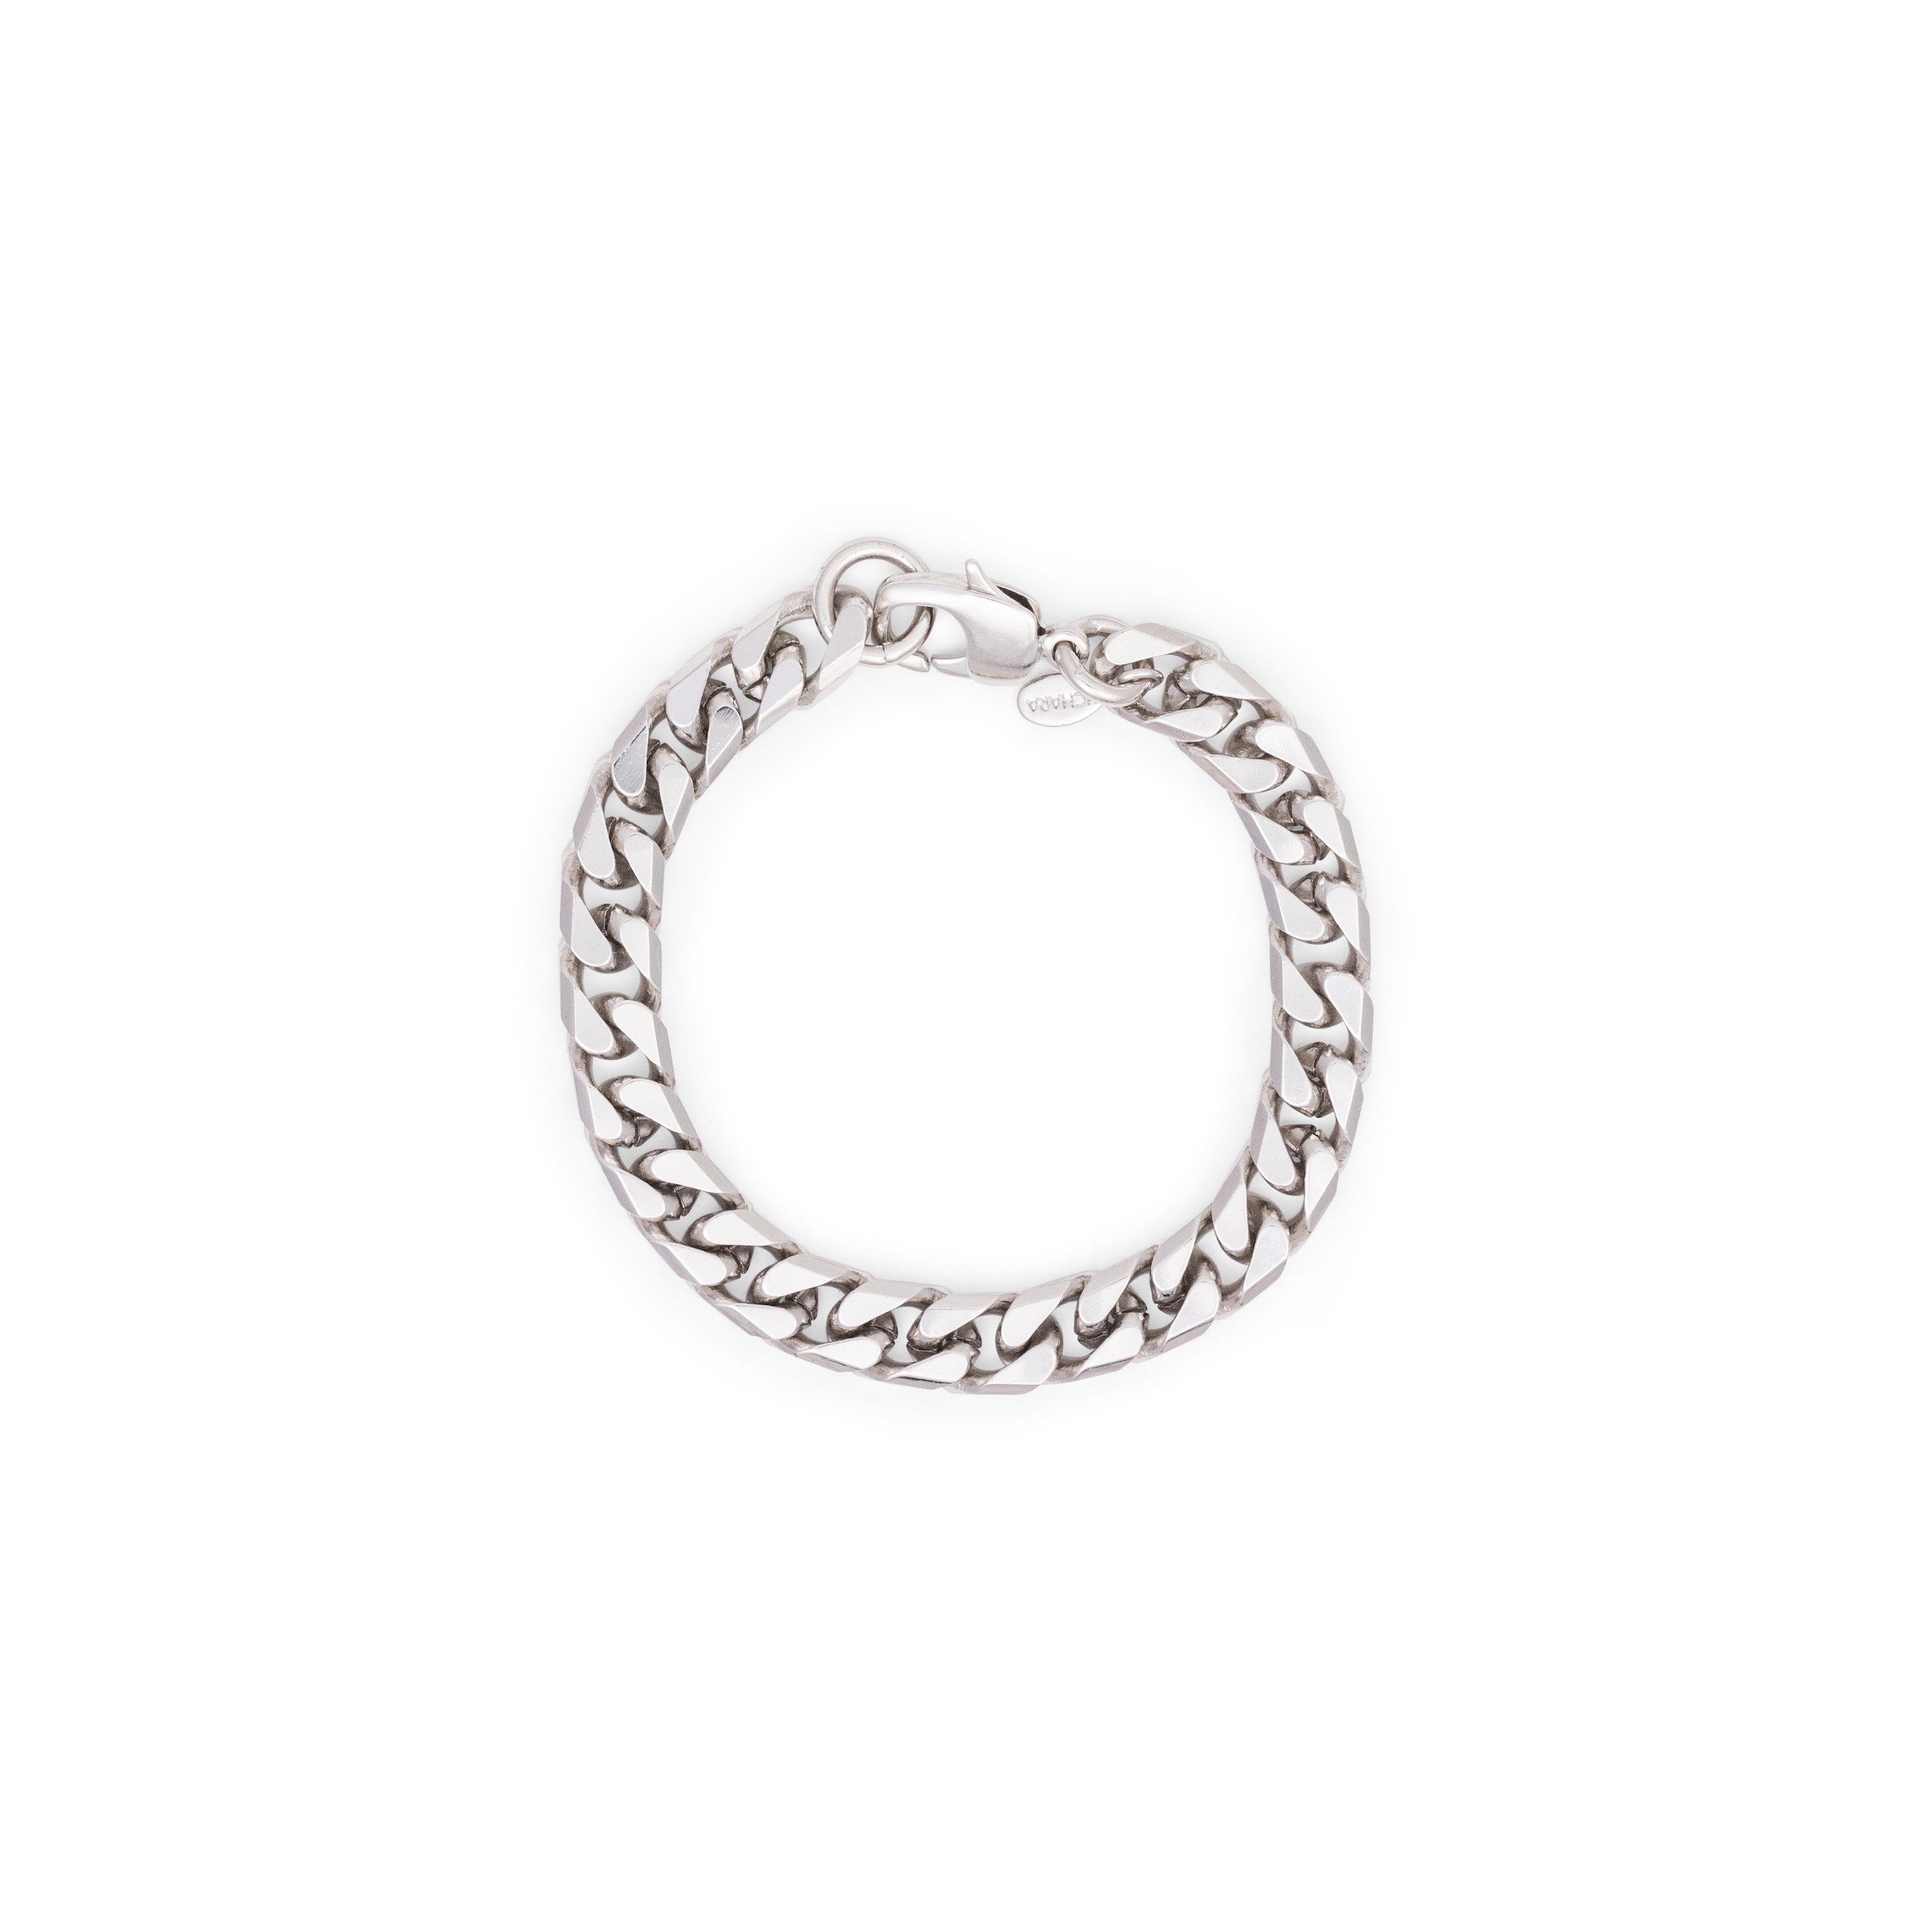 silver cuban link bracelet